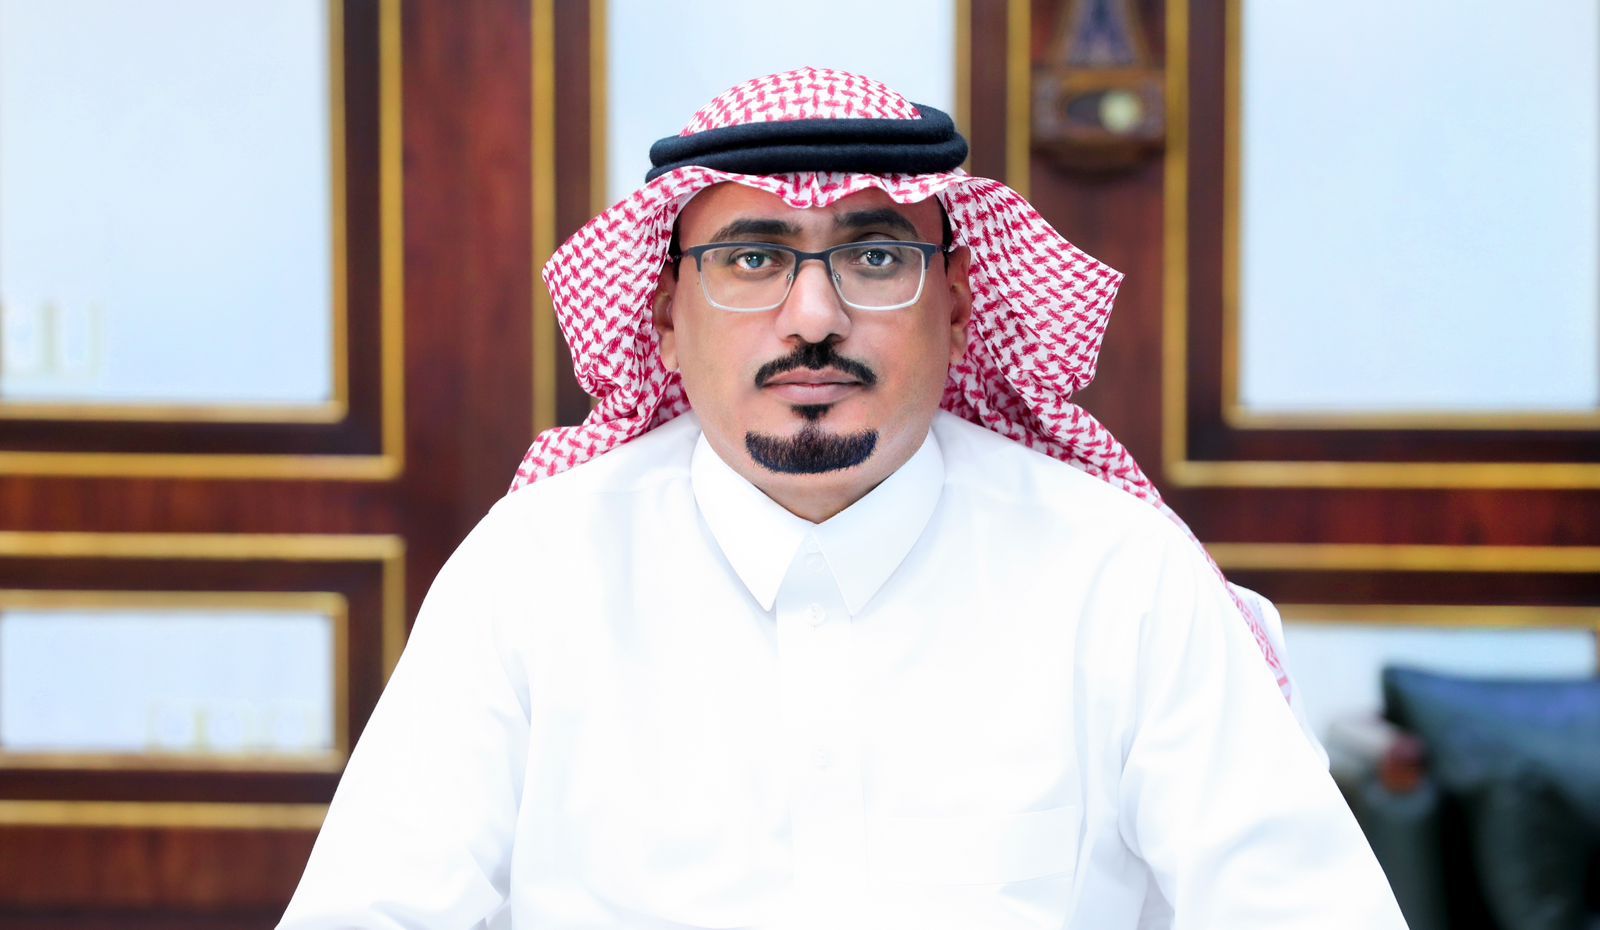 رئيس جامعة بيشة : ميزانية 2023 تحمل أرقاماً استثنائيةً وتعكس كفاءة الإنفاق الحكومي ومتانة الاقتصاد السعودي ونجاح خطط التحول الاقتصادي